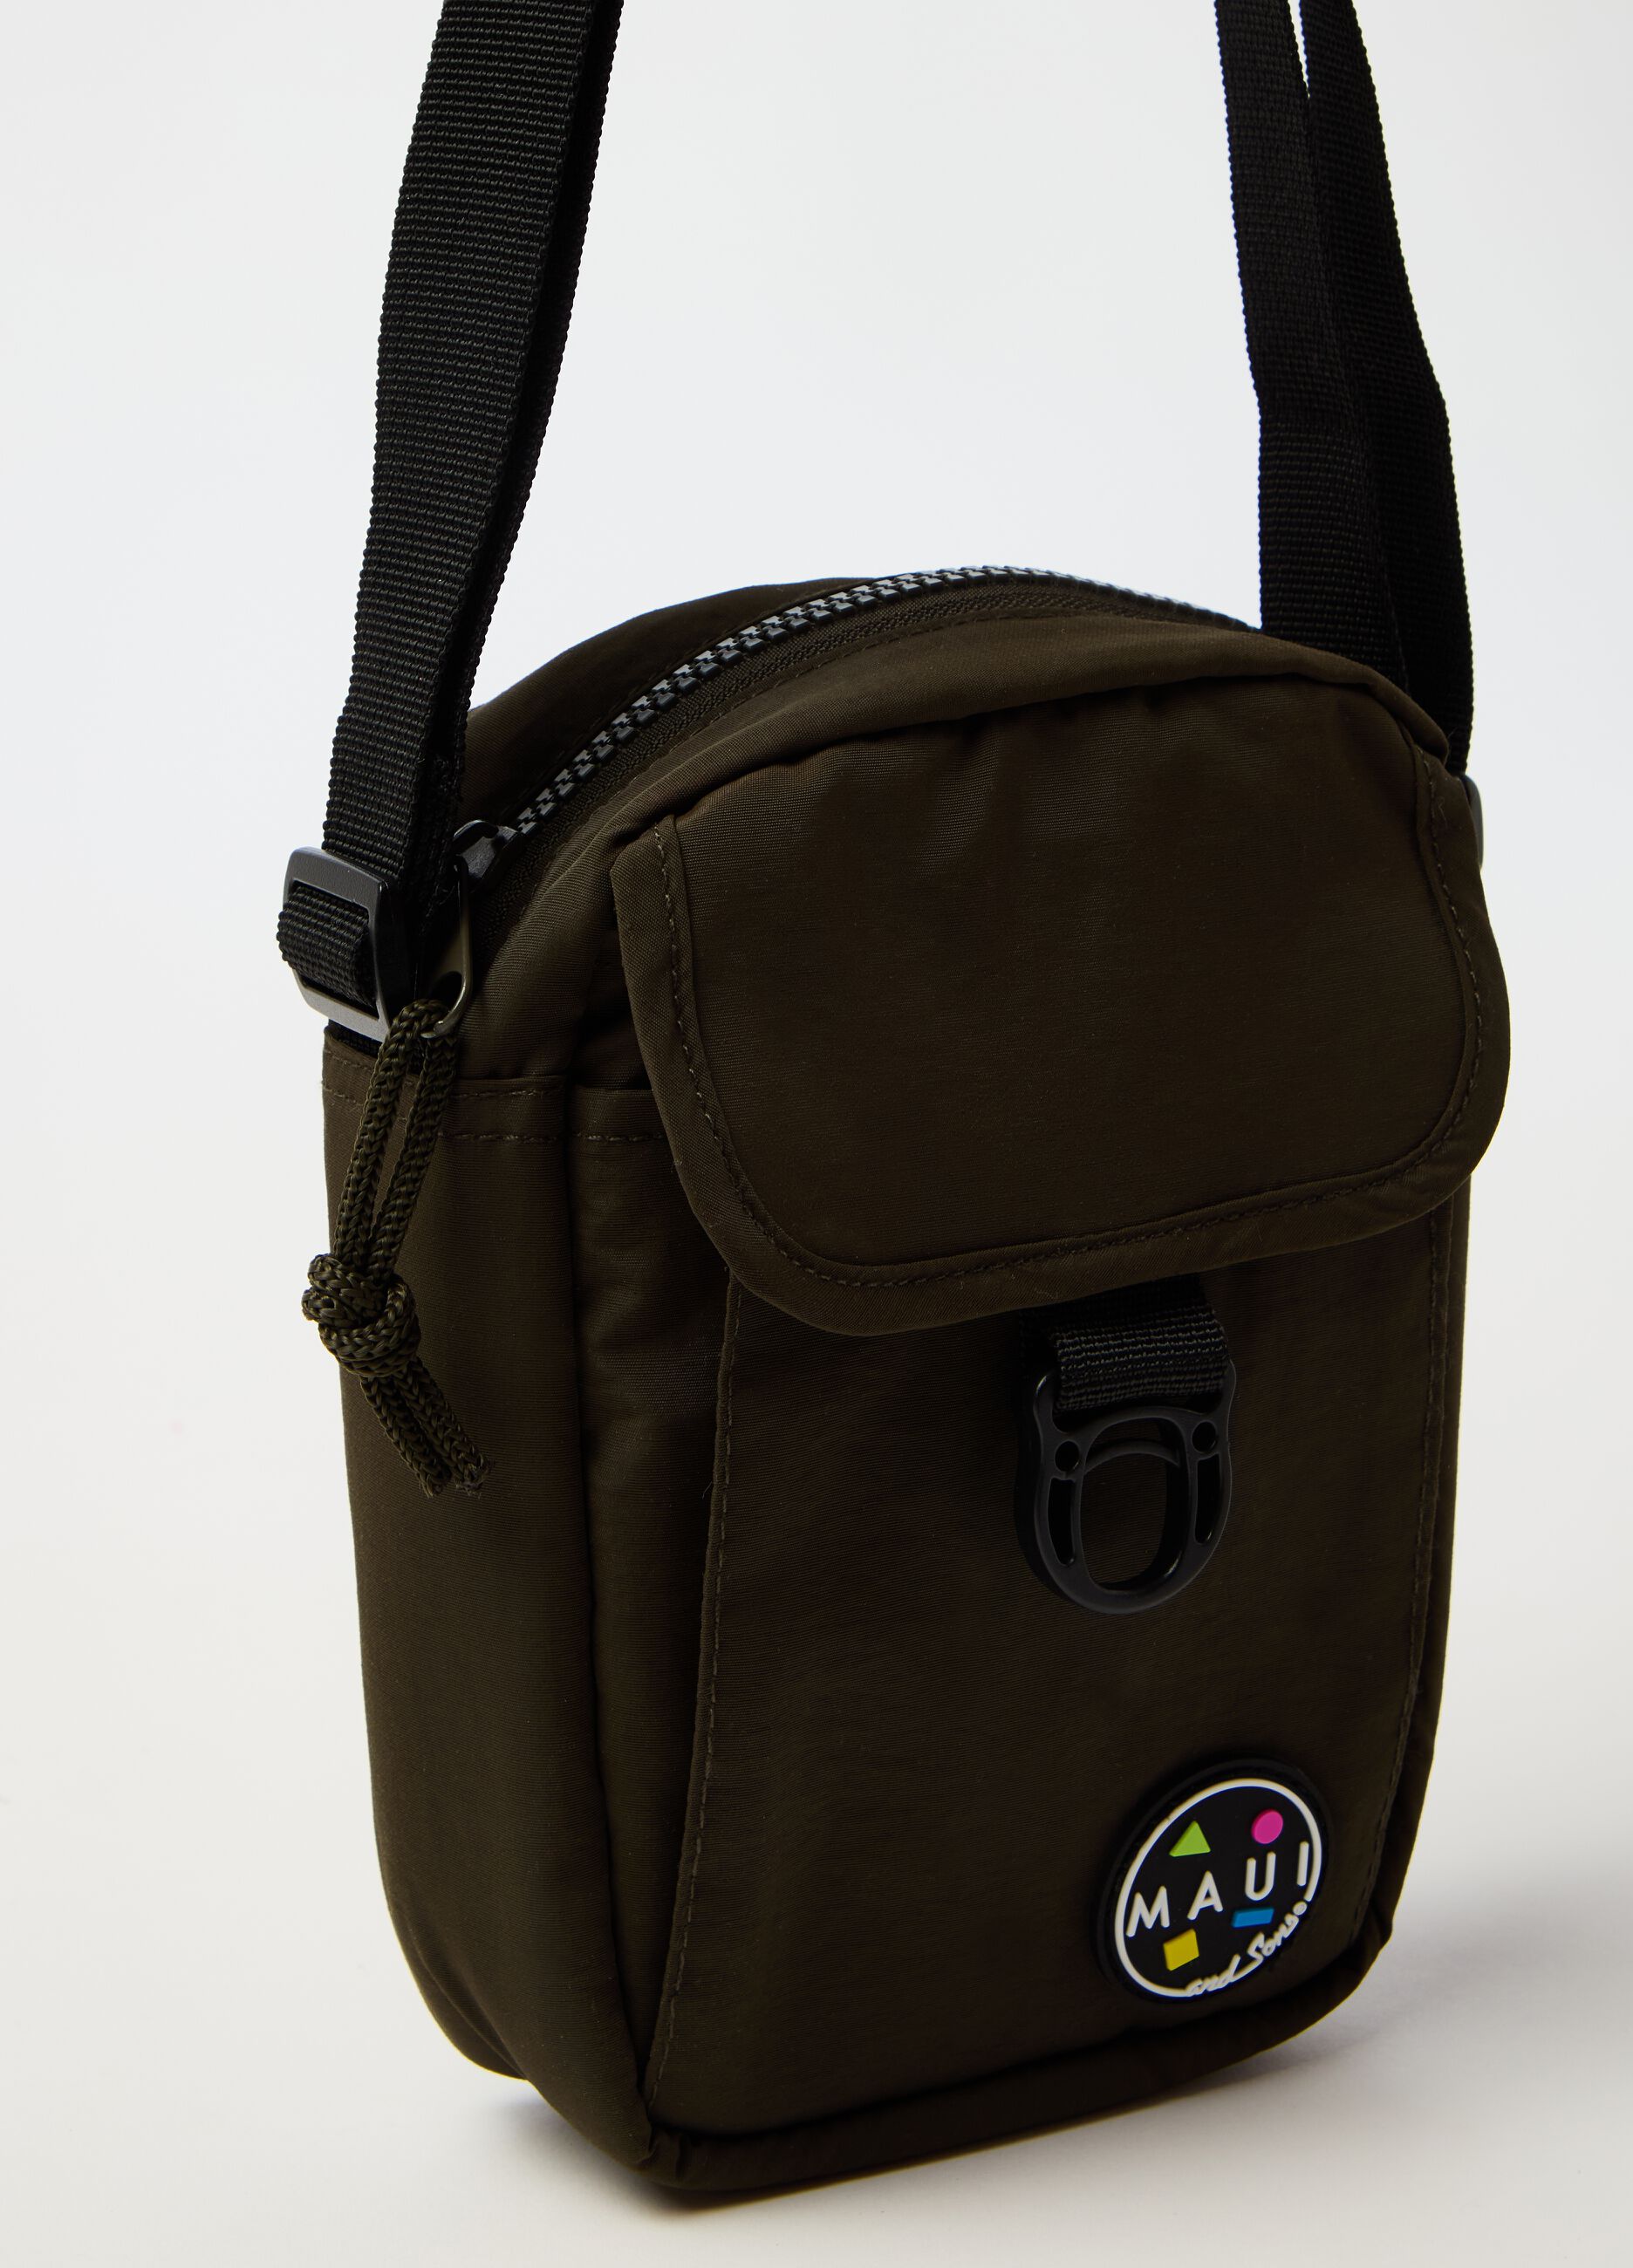 Shoulder bag with logo patch